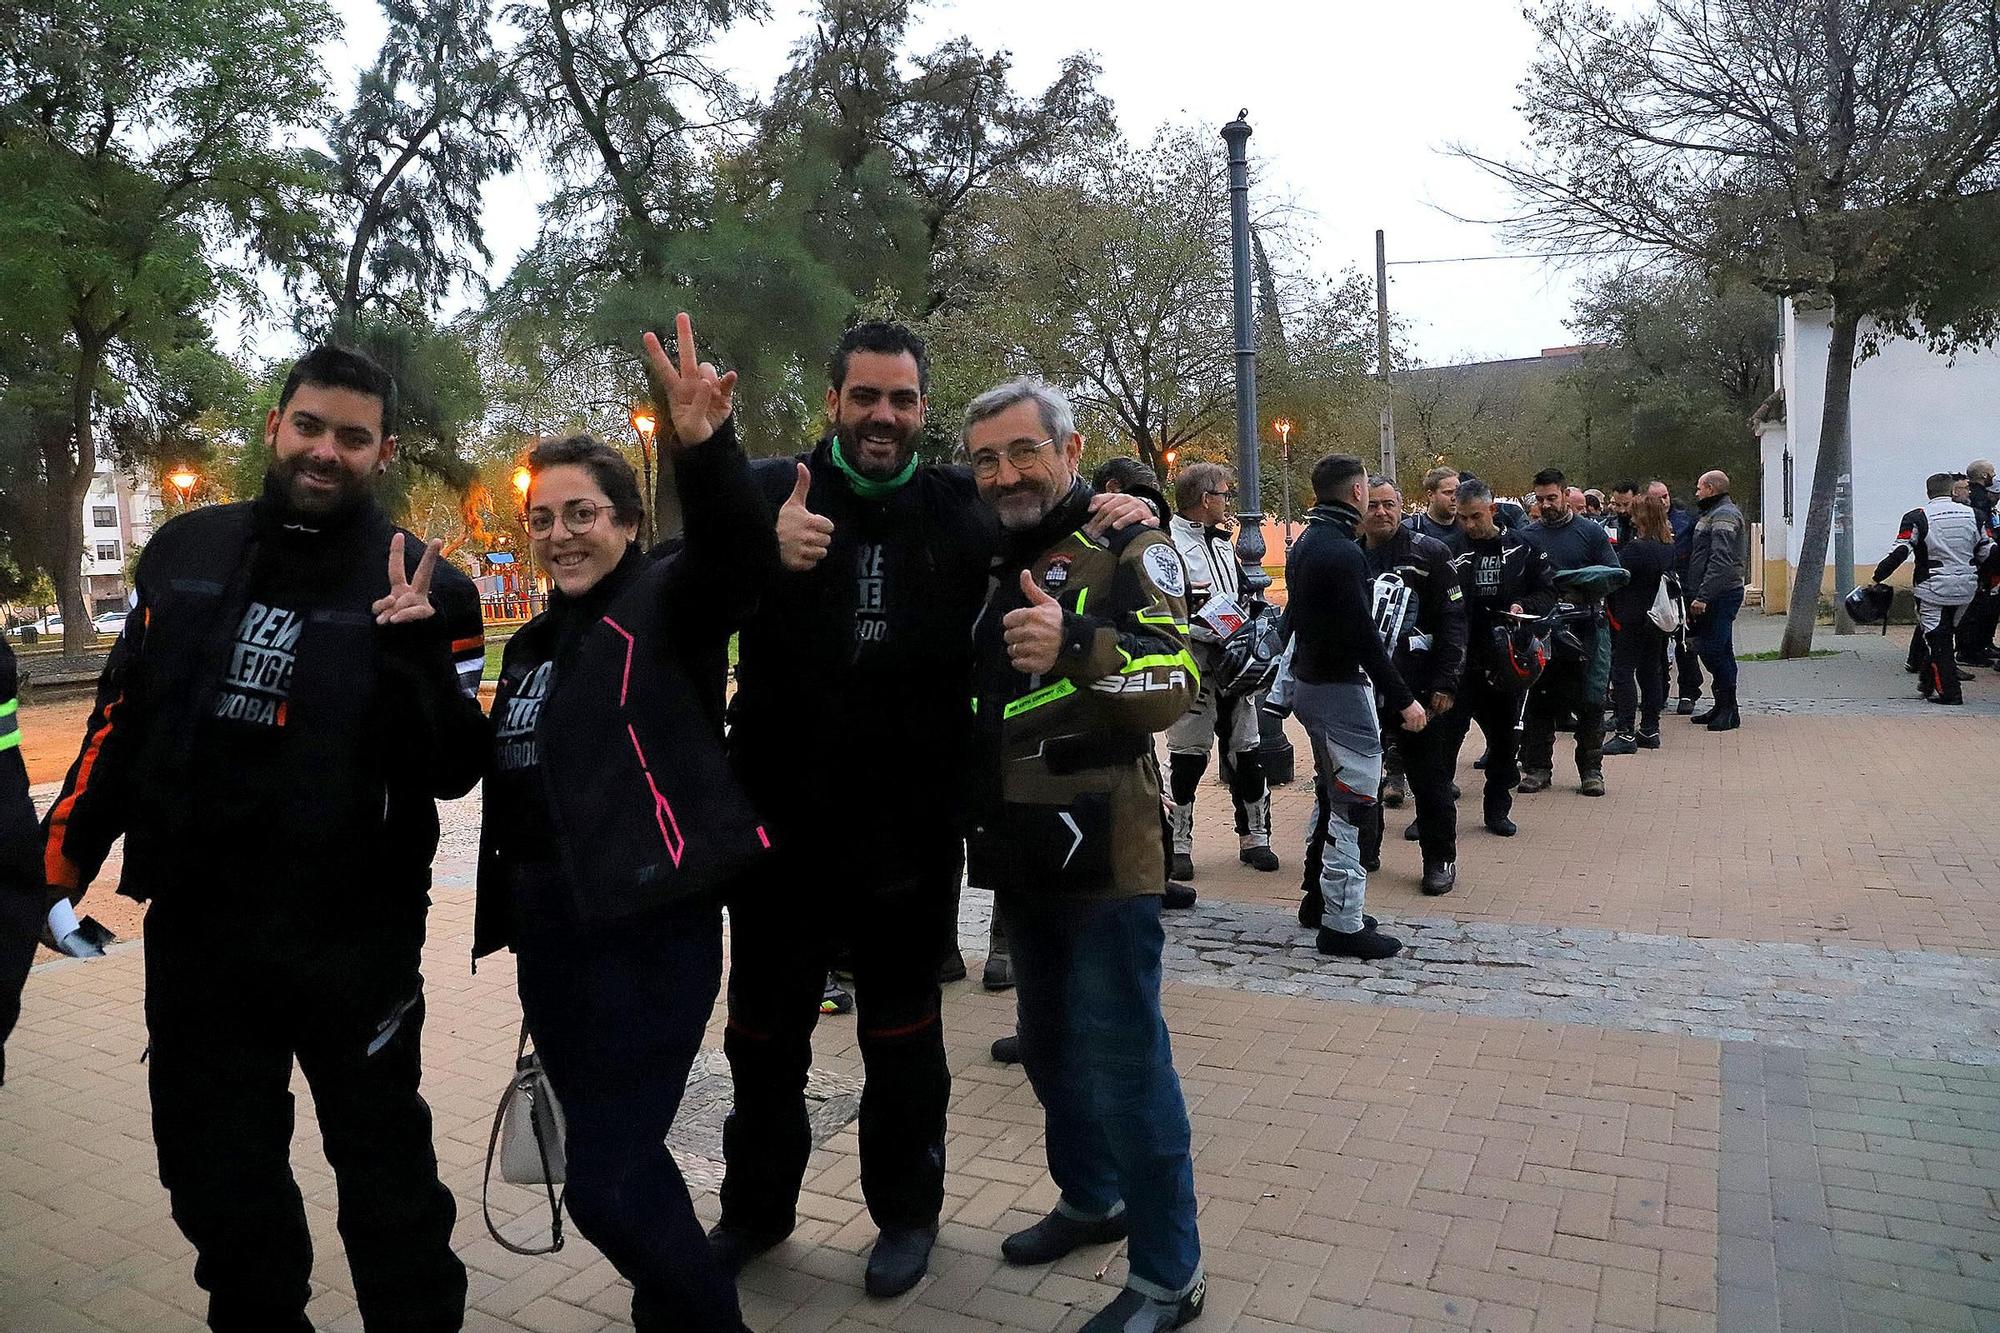 Salida de la XTreme Challenge, el espectáculo de las motos en Córdoba en imágenes